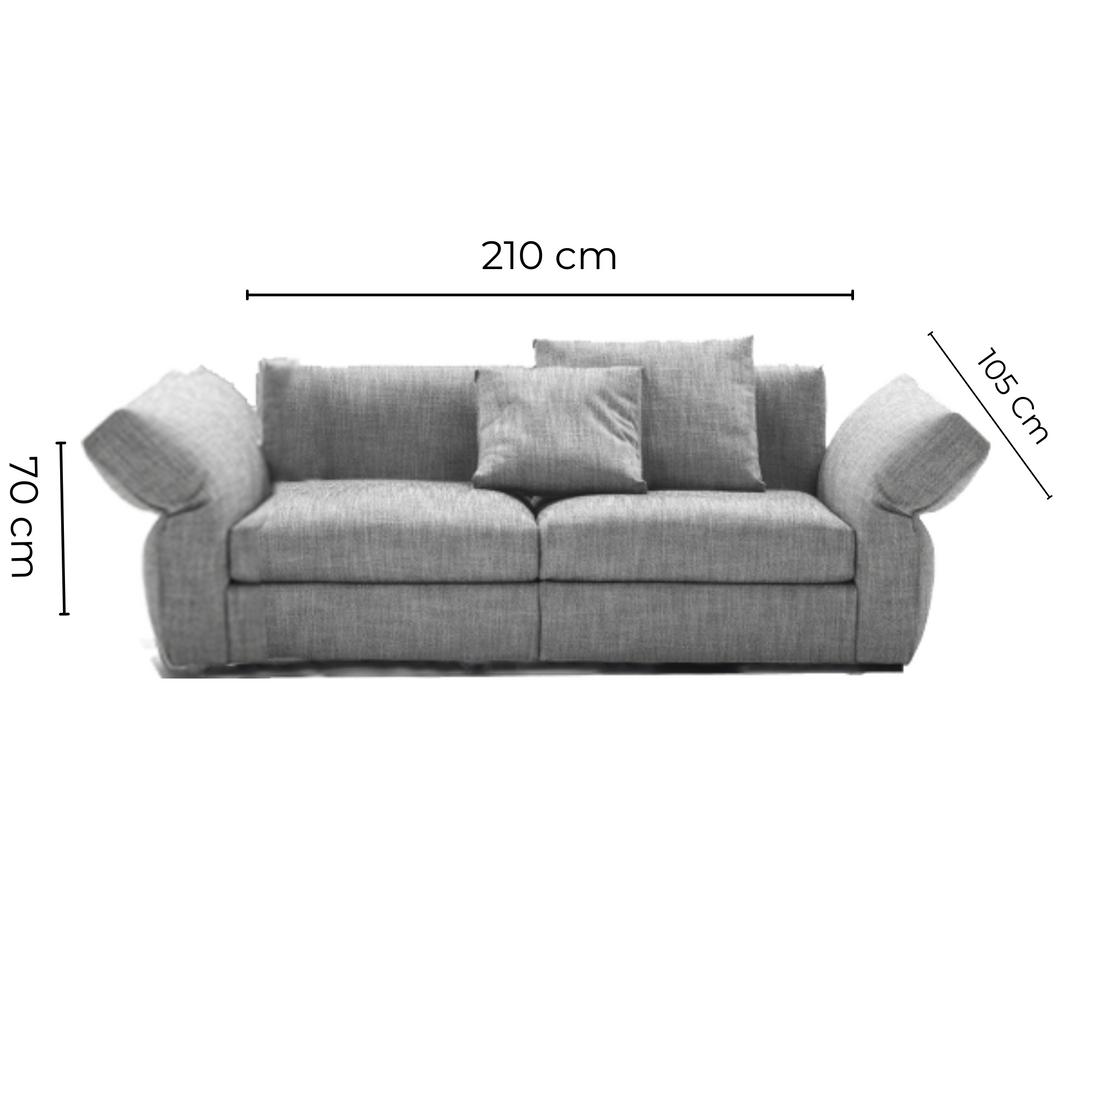 Bendy Sofa